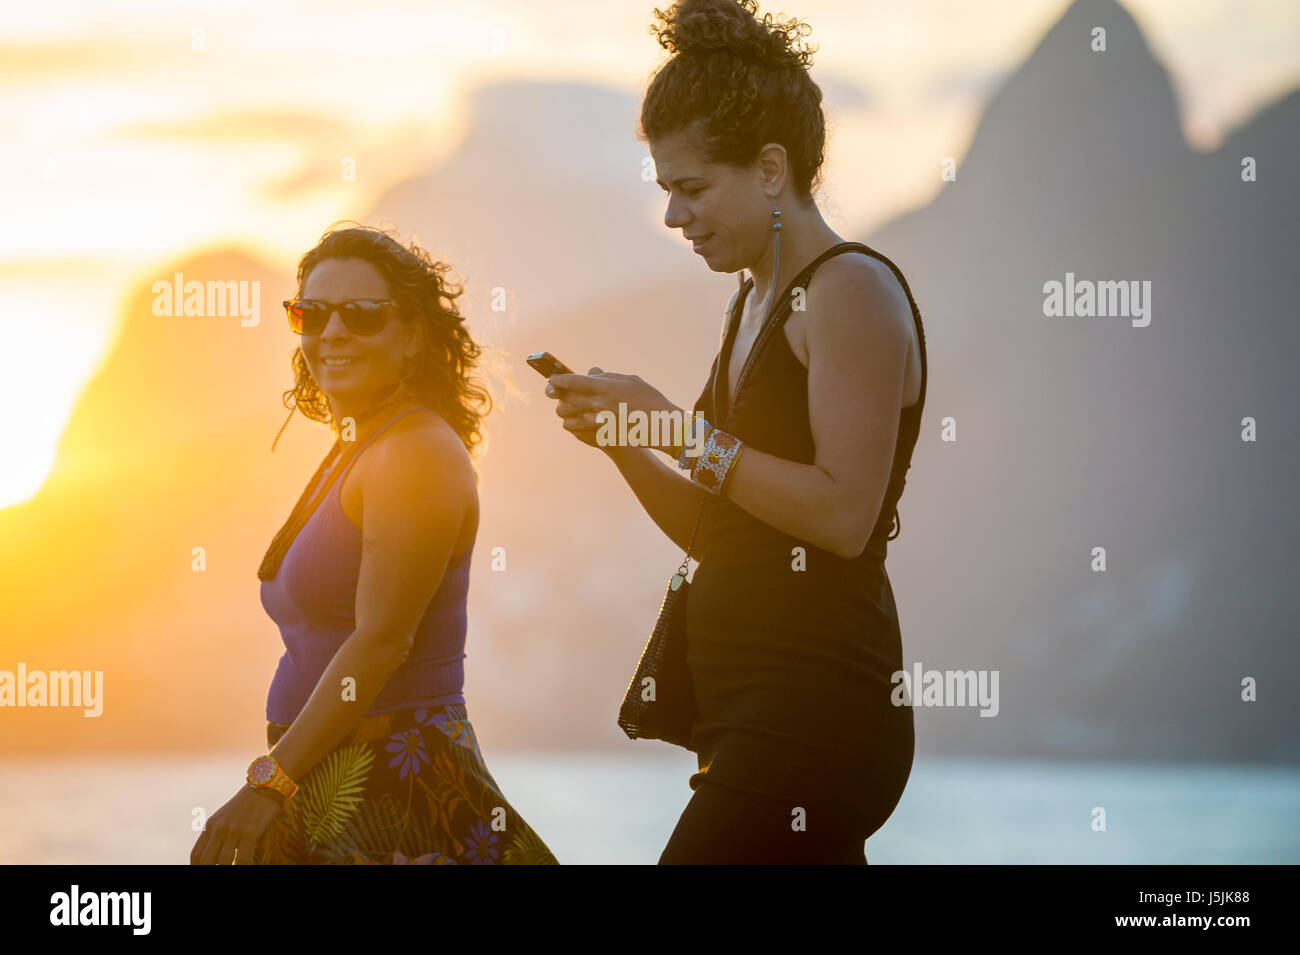 RIO DE JANEIRO - 21. Februar 2017: Junge Frauen Fuß entlang der Promenade am Arpoador, den beliebten Blick auf den Sonnenuntergang von Ipanema zu genießen. Stockfoto